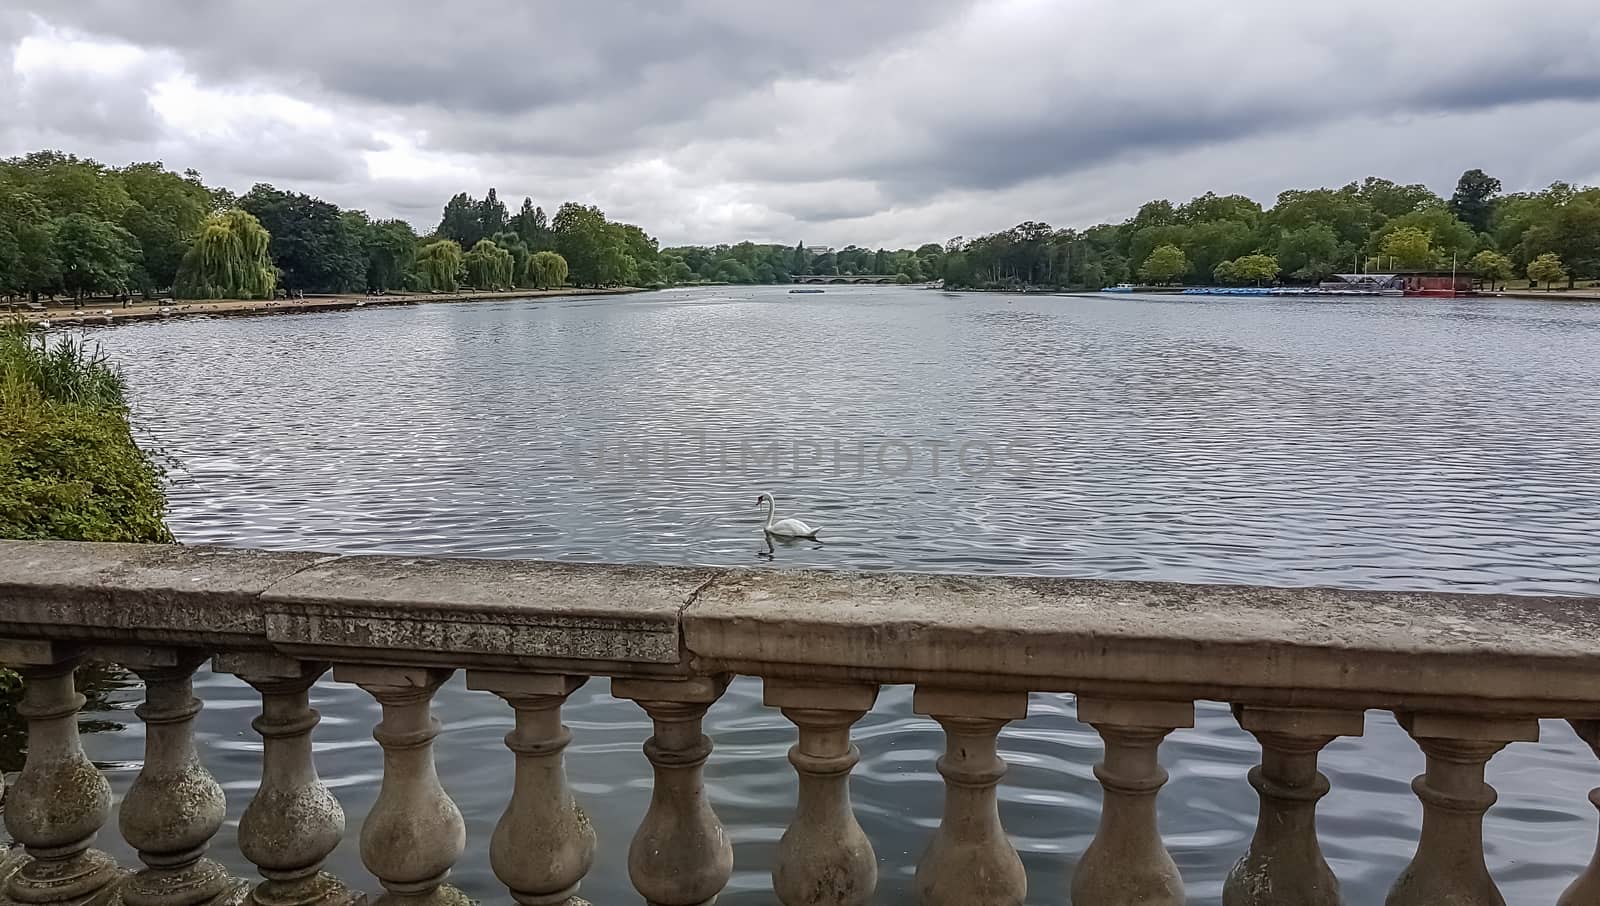 White swan in Hyde Park lake. London, UK. by DamantisZ